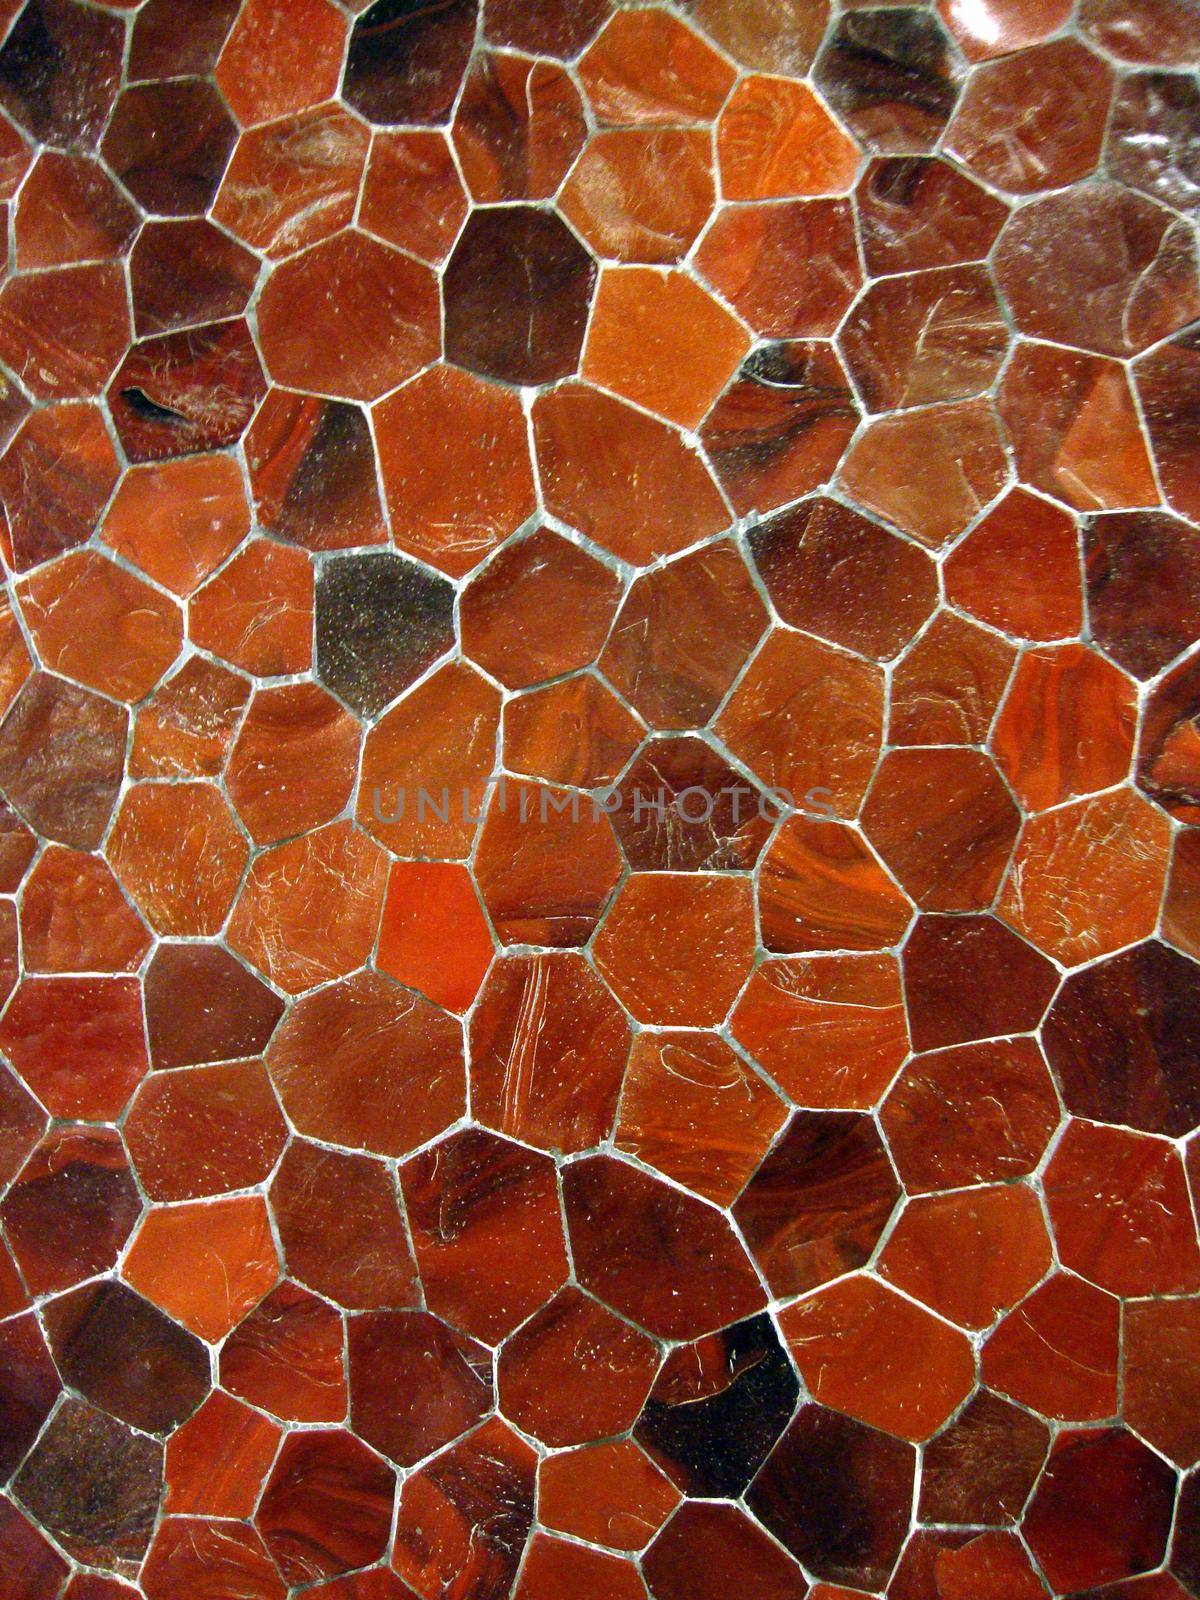 Orange tile mosaic pattern by EricGBVD